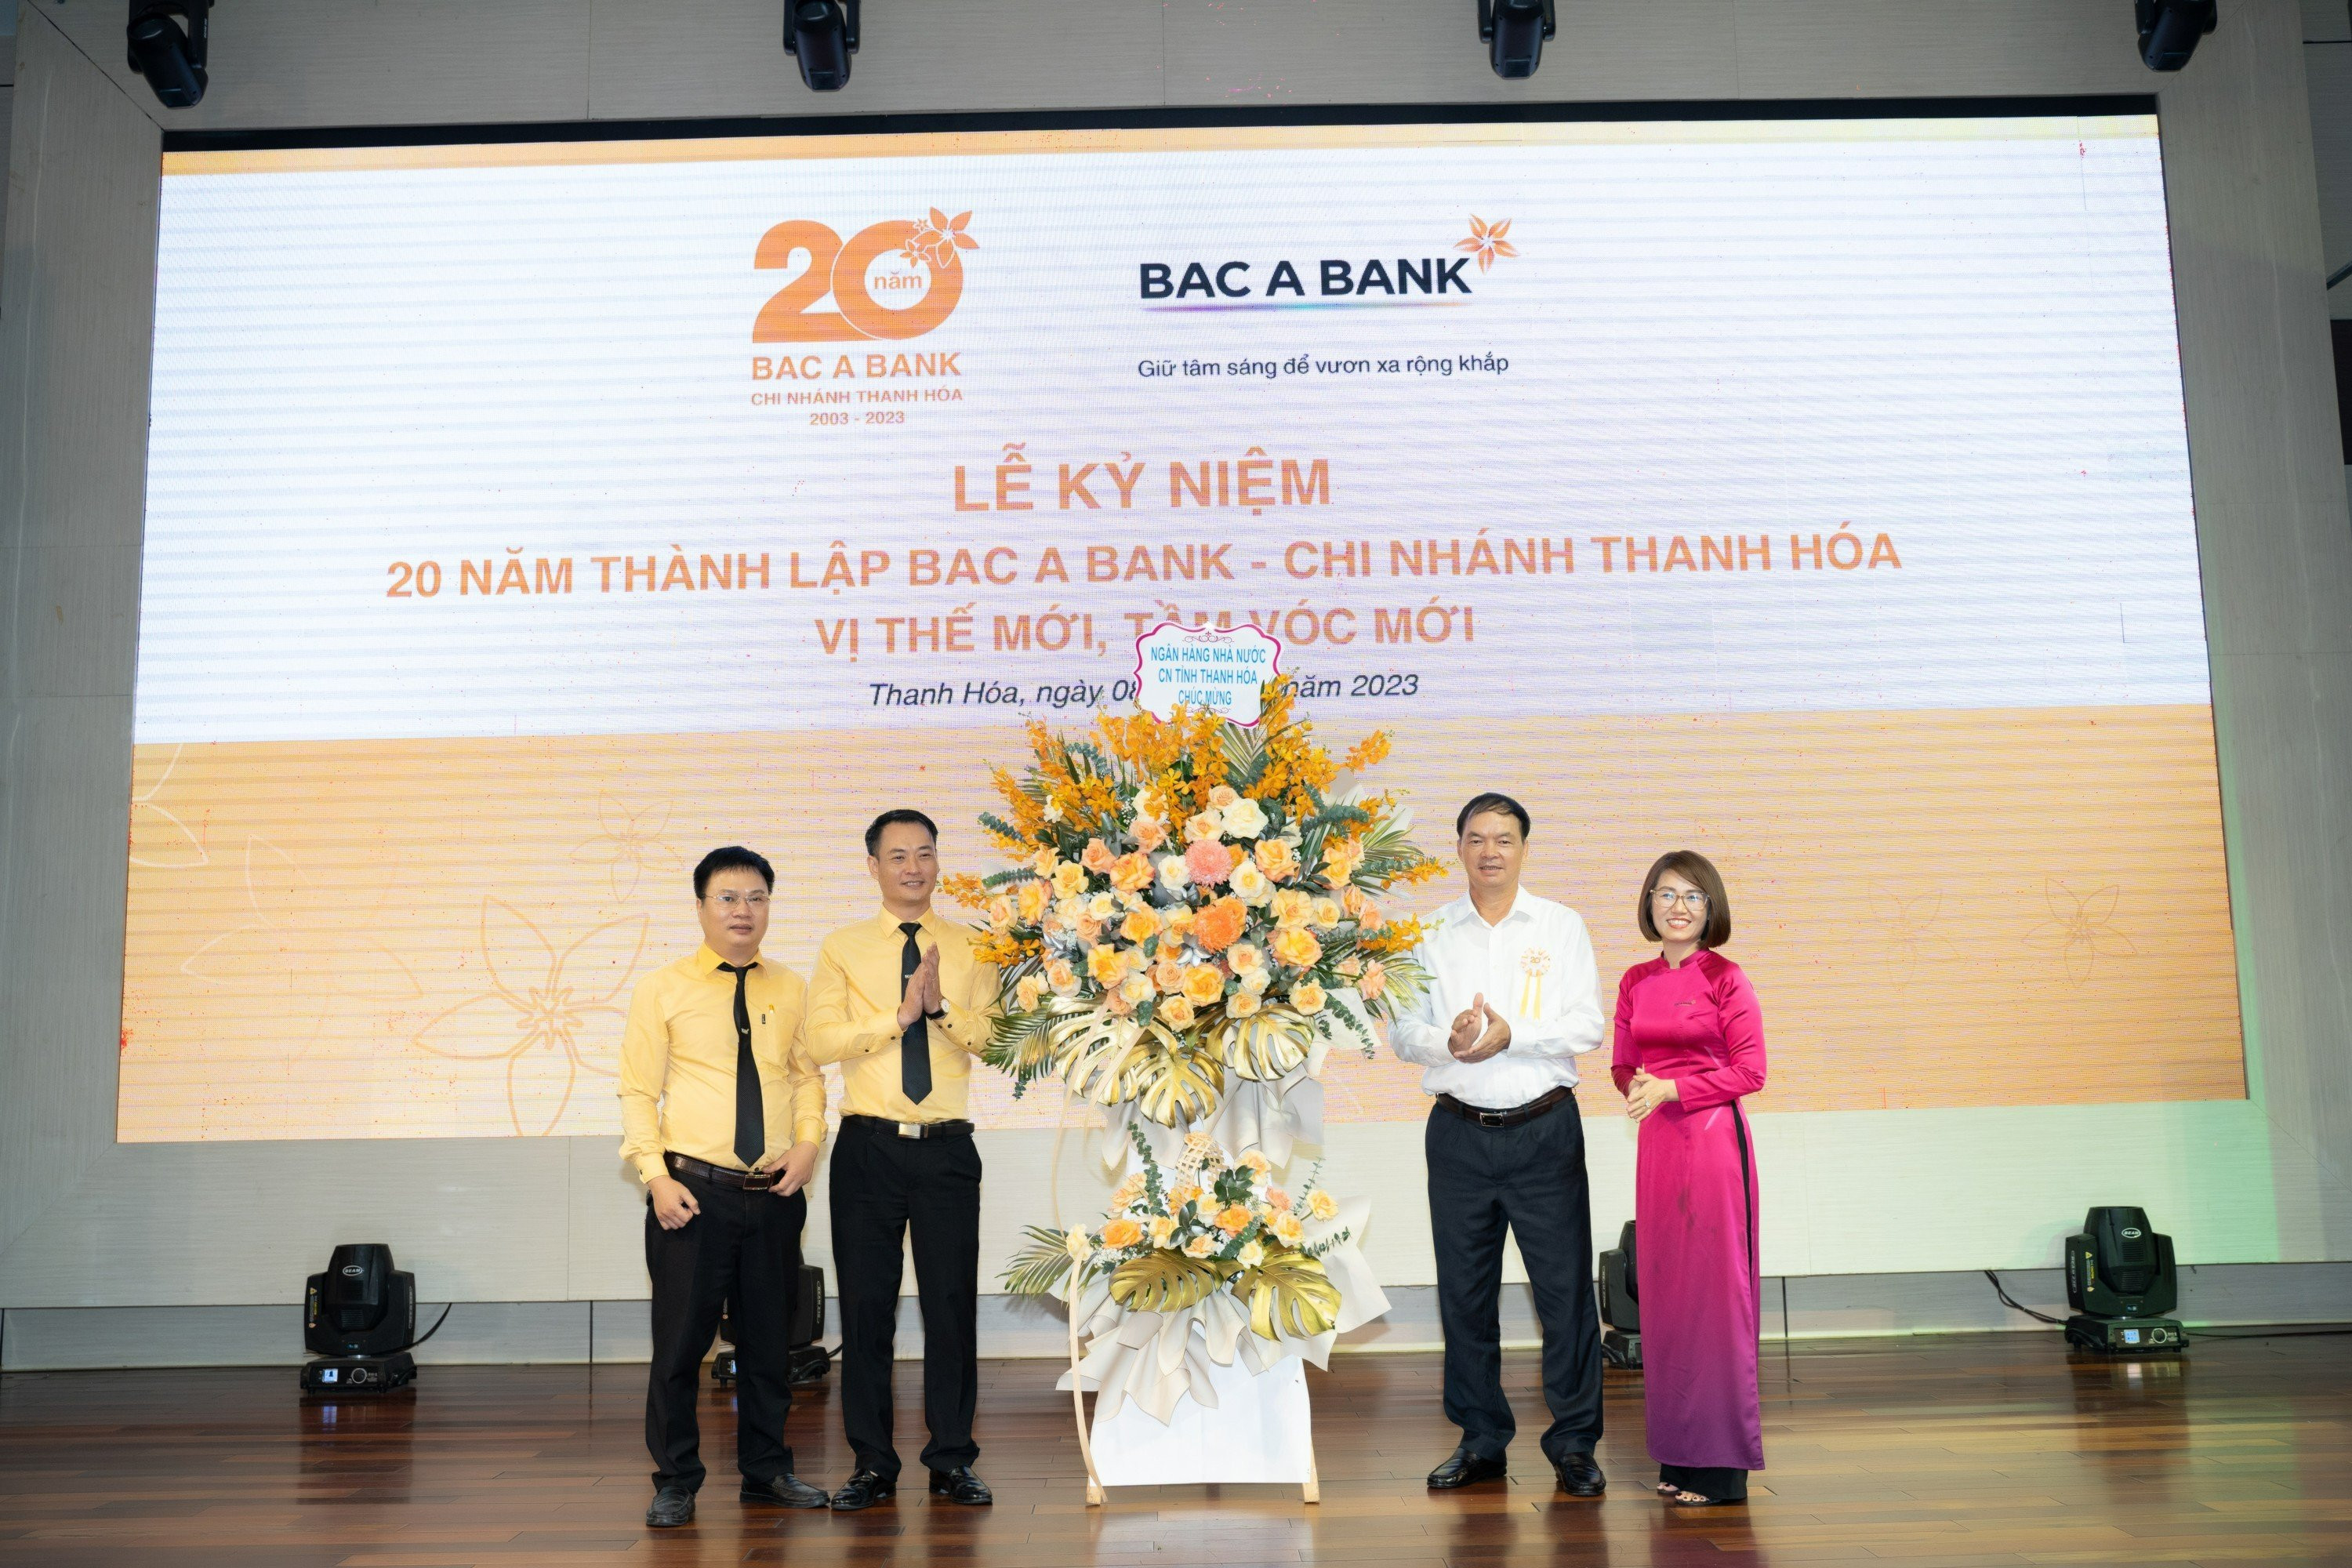 4.Trong 20 năm phát triển, BAC A BANK Chi nhánh Thanh Hóa luôn được khách hàng địa phương lựa chọn và tin tưởng.jpg